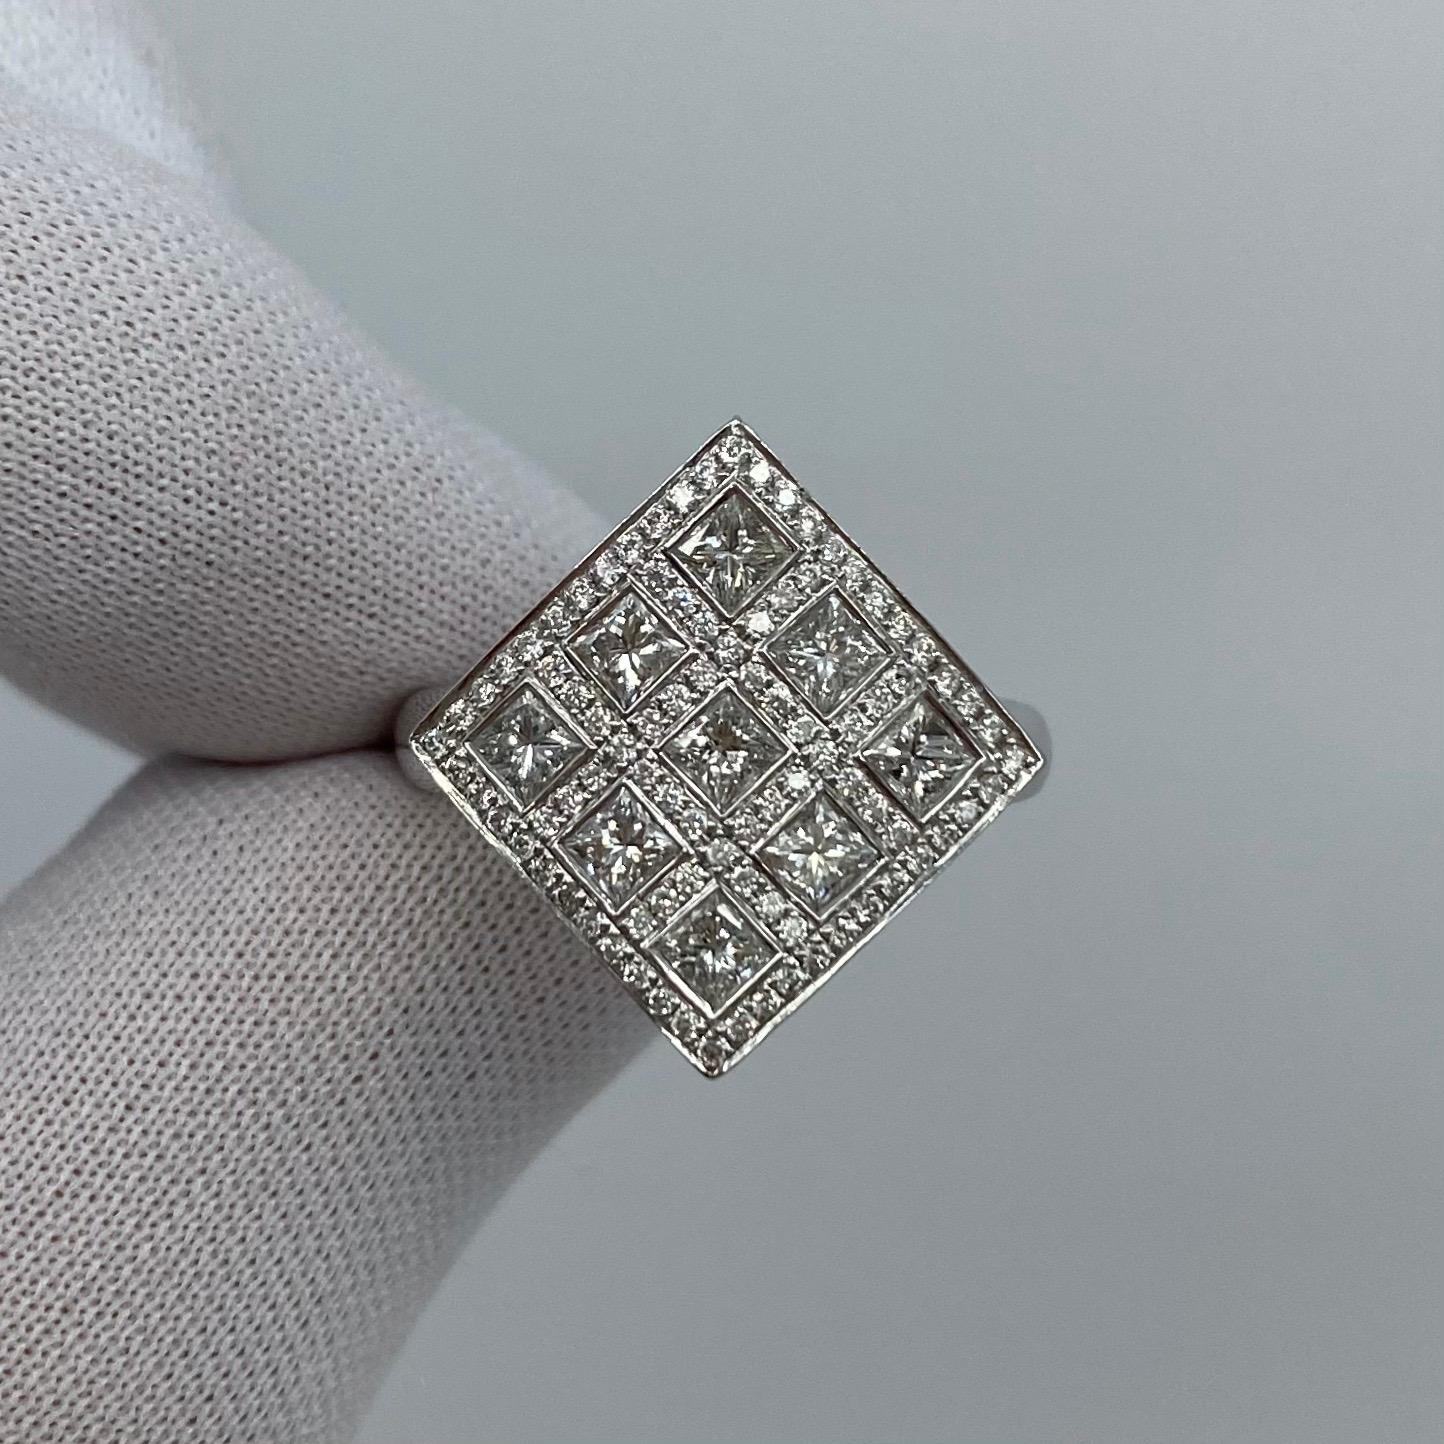 Bague à sommet carré en forme de grappe de diamants de style Art déco.

Une belle et unique bague carrée de 2,08ct en or blanc 18k avec x9 diamants taille princesse de 3mm d'environ 1,62ct et x92 diamants blancs ronds de 1mm d'environ 0,46ct.
Tous